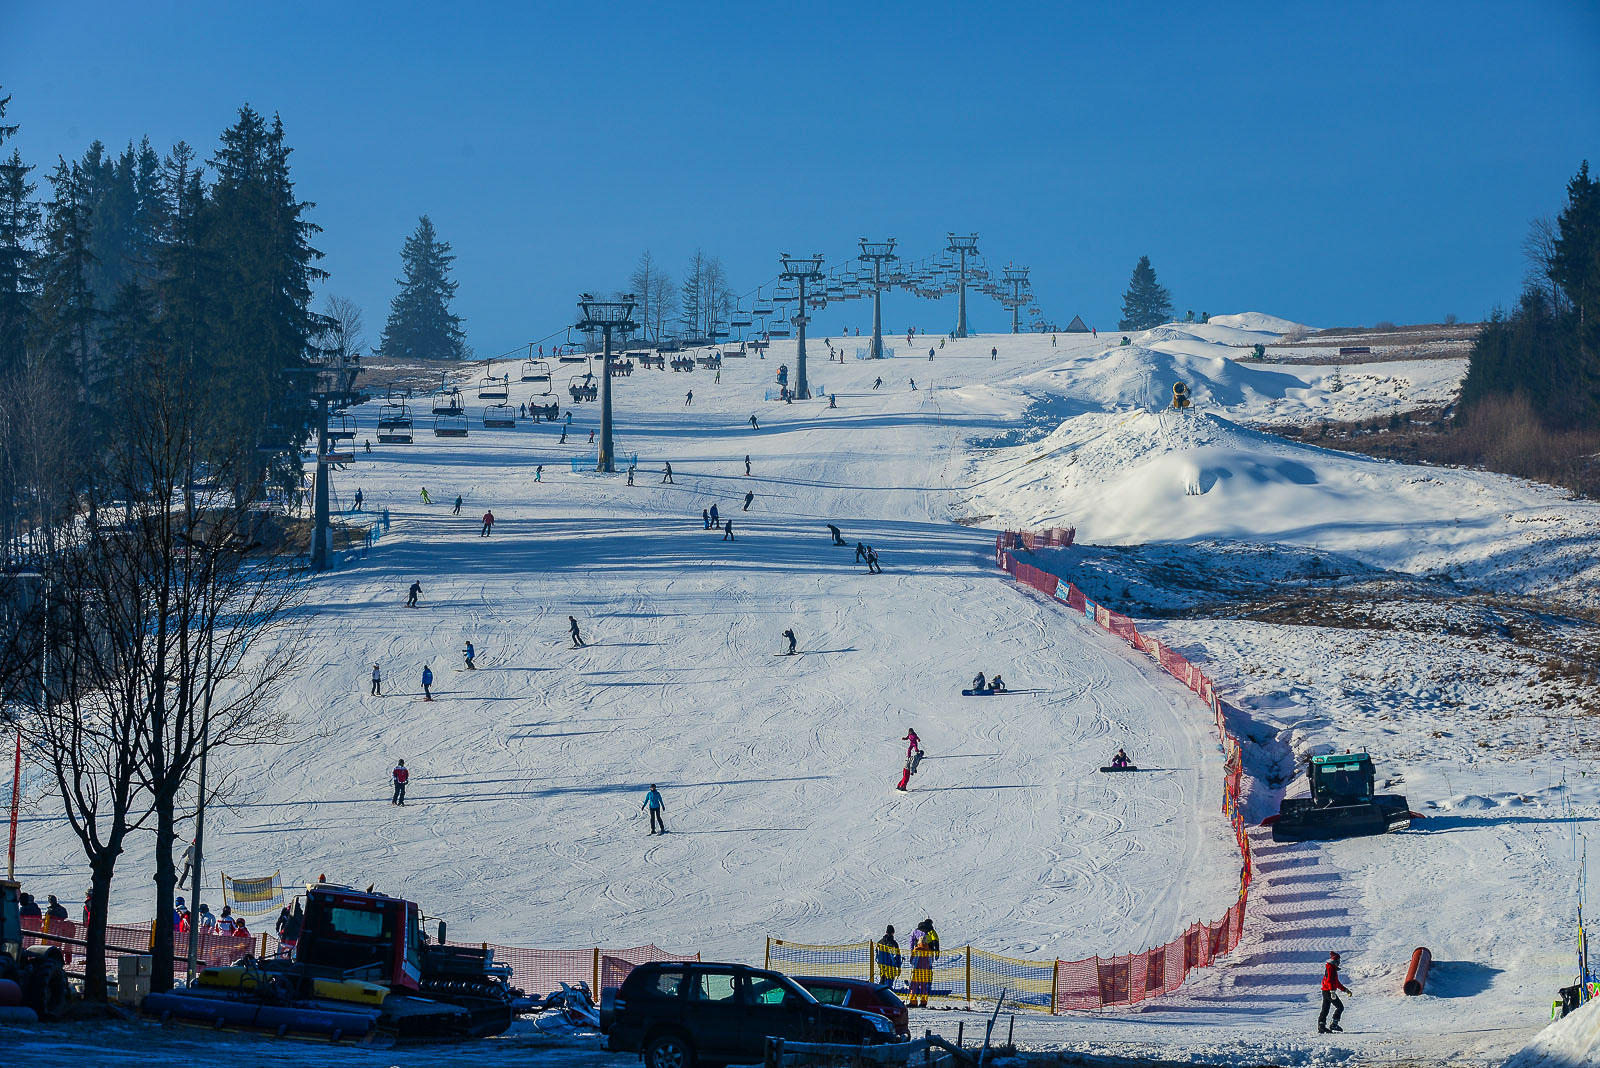 Stok narciarski w Witowie.